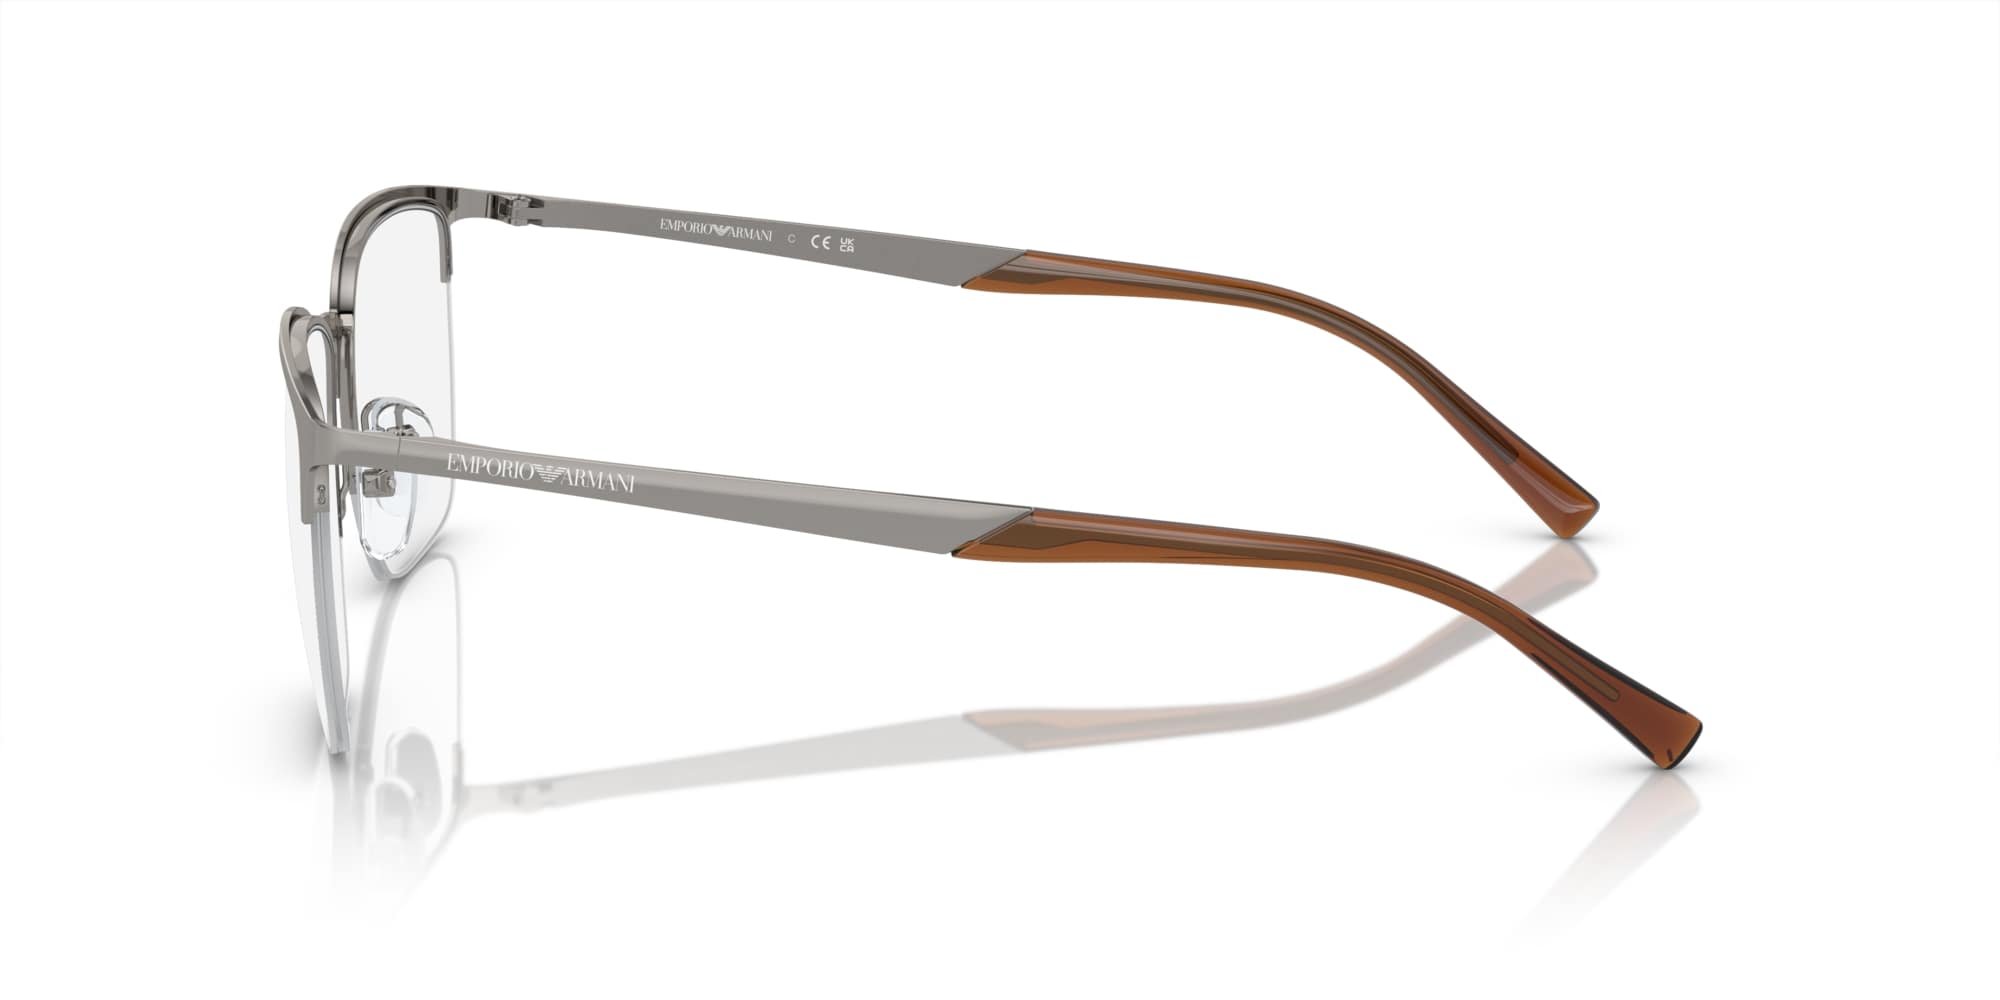 Das Bild zeigt die Korrektionsbrille EA1151 3010 von der Marke Emporio Armani in Silber/Bordeaux.